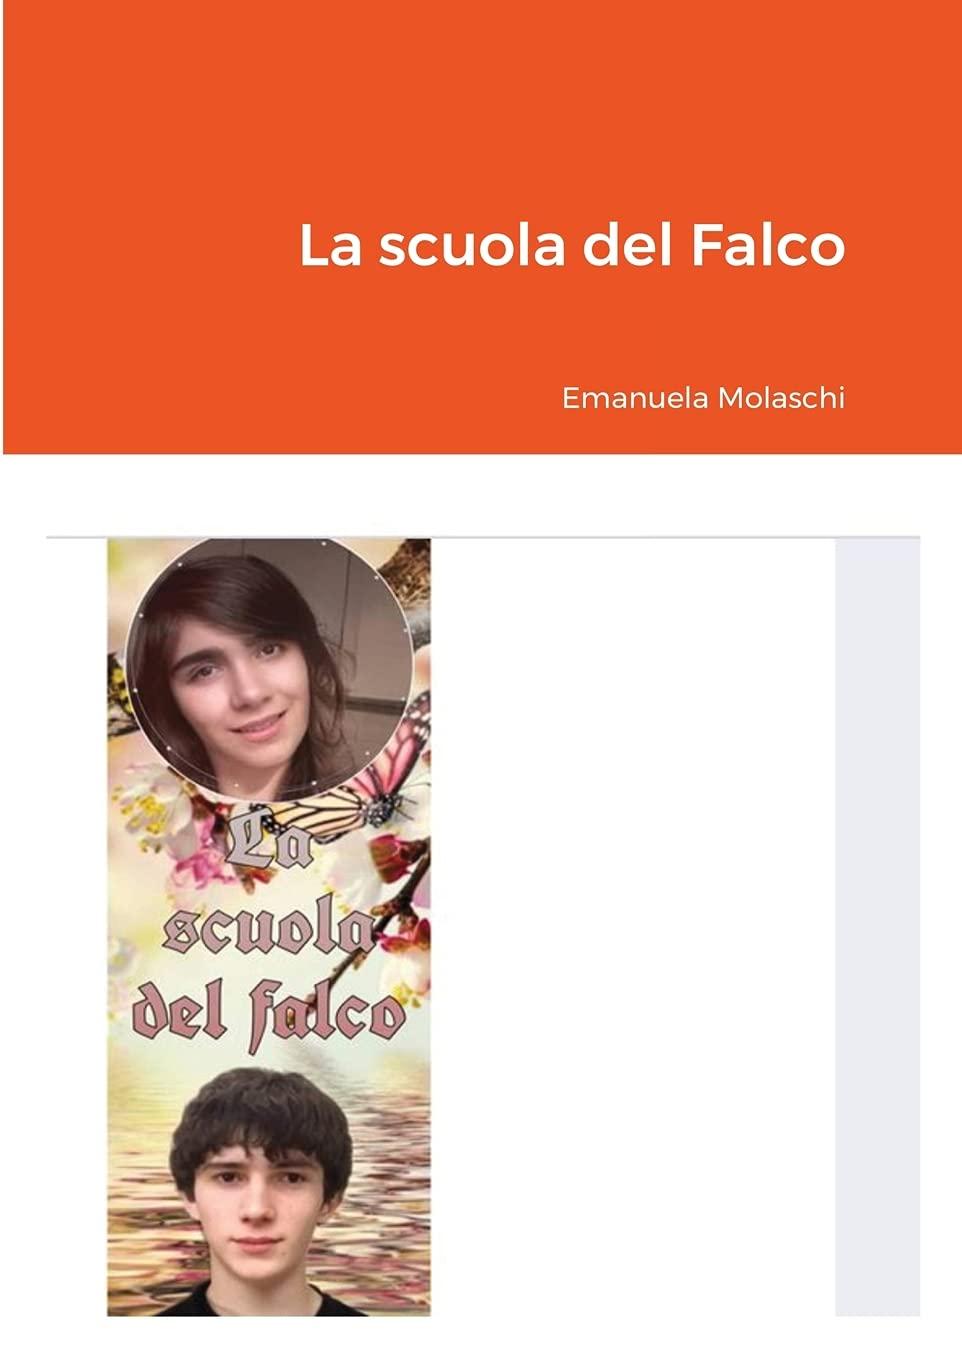 Libro "La scuola del Falco" di Emanuela Molaschi